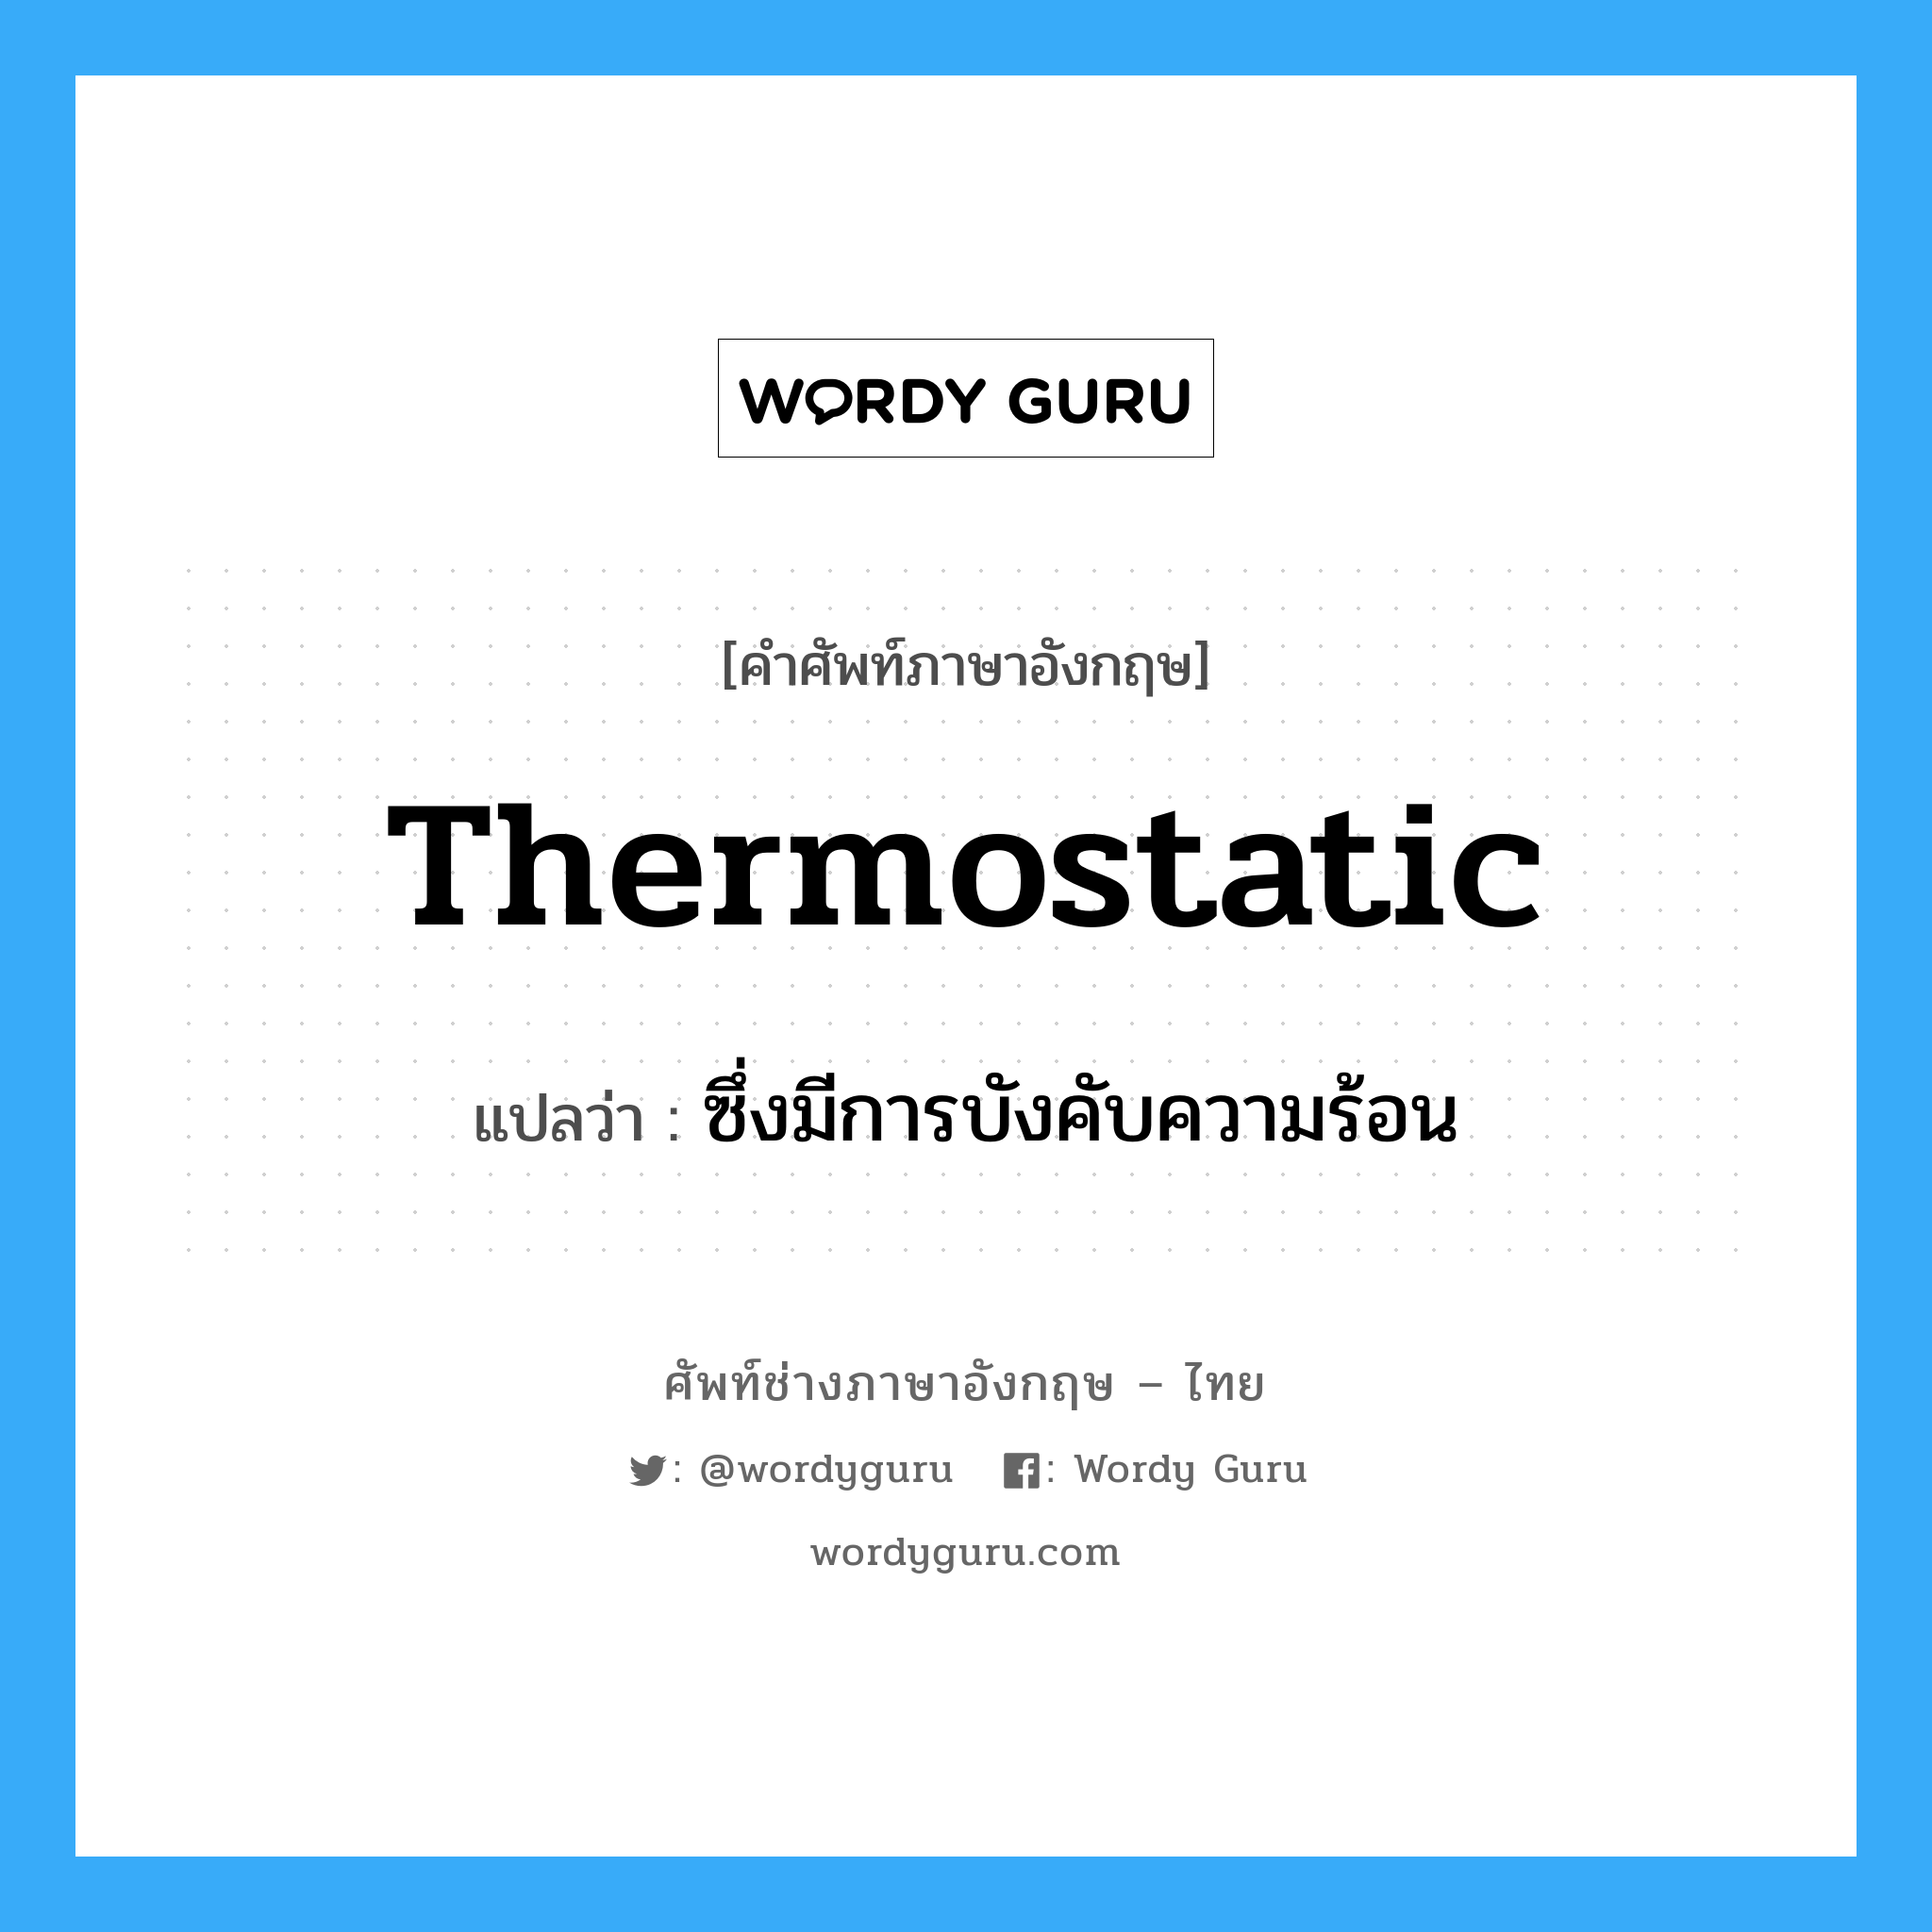 ซึ่งมีการบังคับความร้อน ภาษาอังกฤษ?, คำศัพท์ช่างภาษาอังกฤษ - ไทย ซึ่งมีการบังคับความร้อน คำศัพท์ภาษาอังกฤษ ซึ่งมีการบังคับความร้อน แปลว่า thermostatic